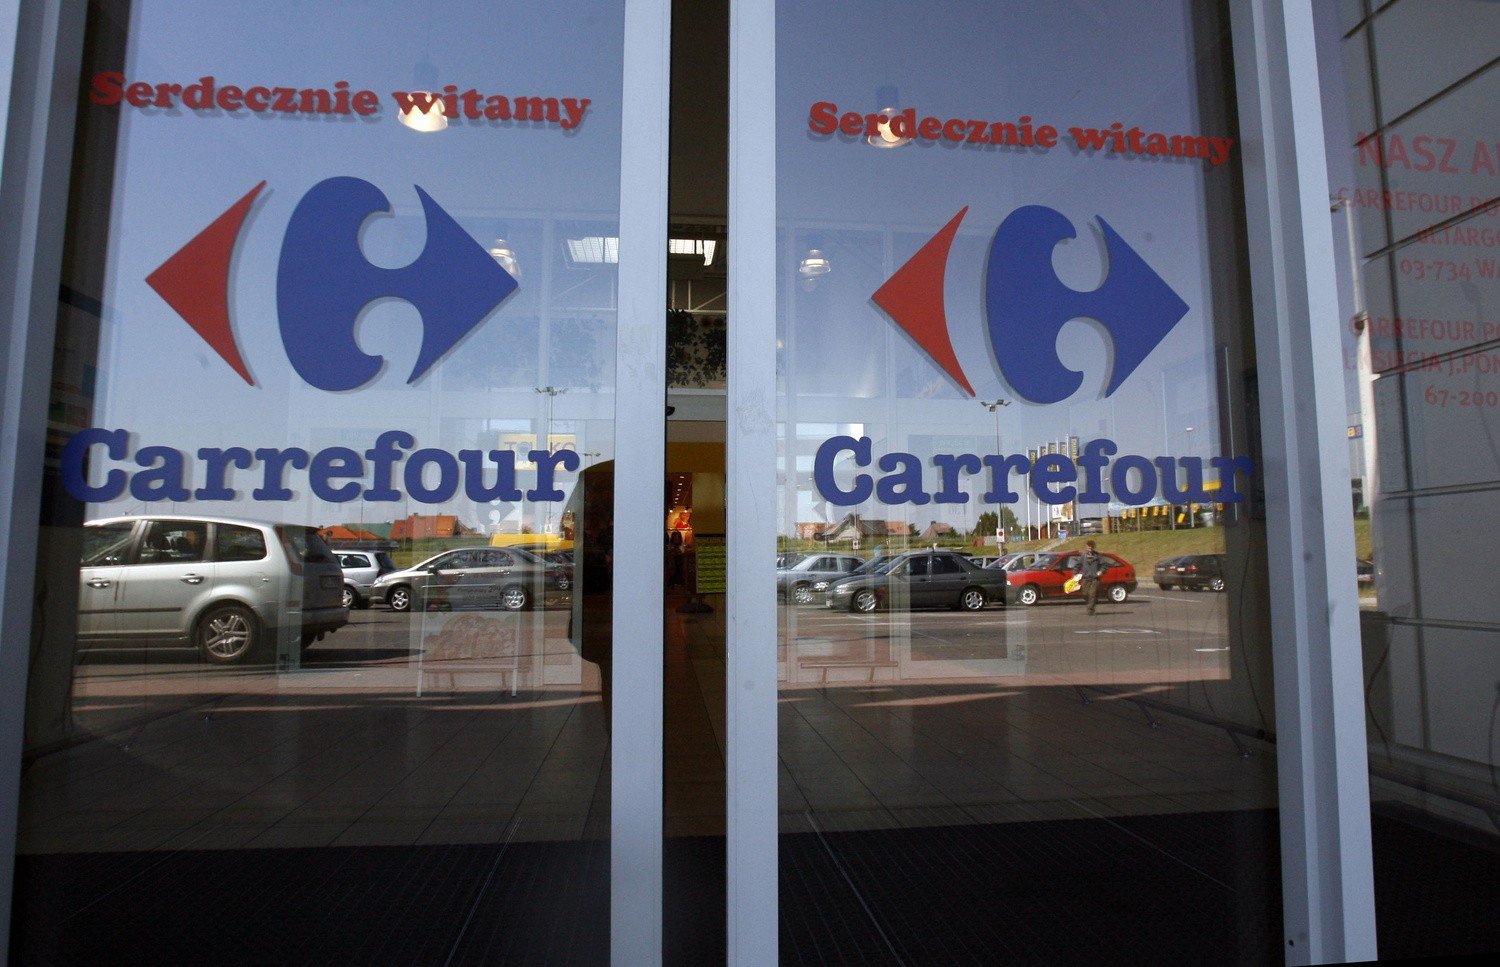 Carrefour: Ochrona przymyka 7-latkę. Bo miała zniszczyć zabawkę za 6,99 zł  | Głos Wielkopolski